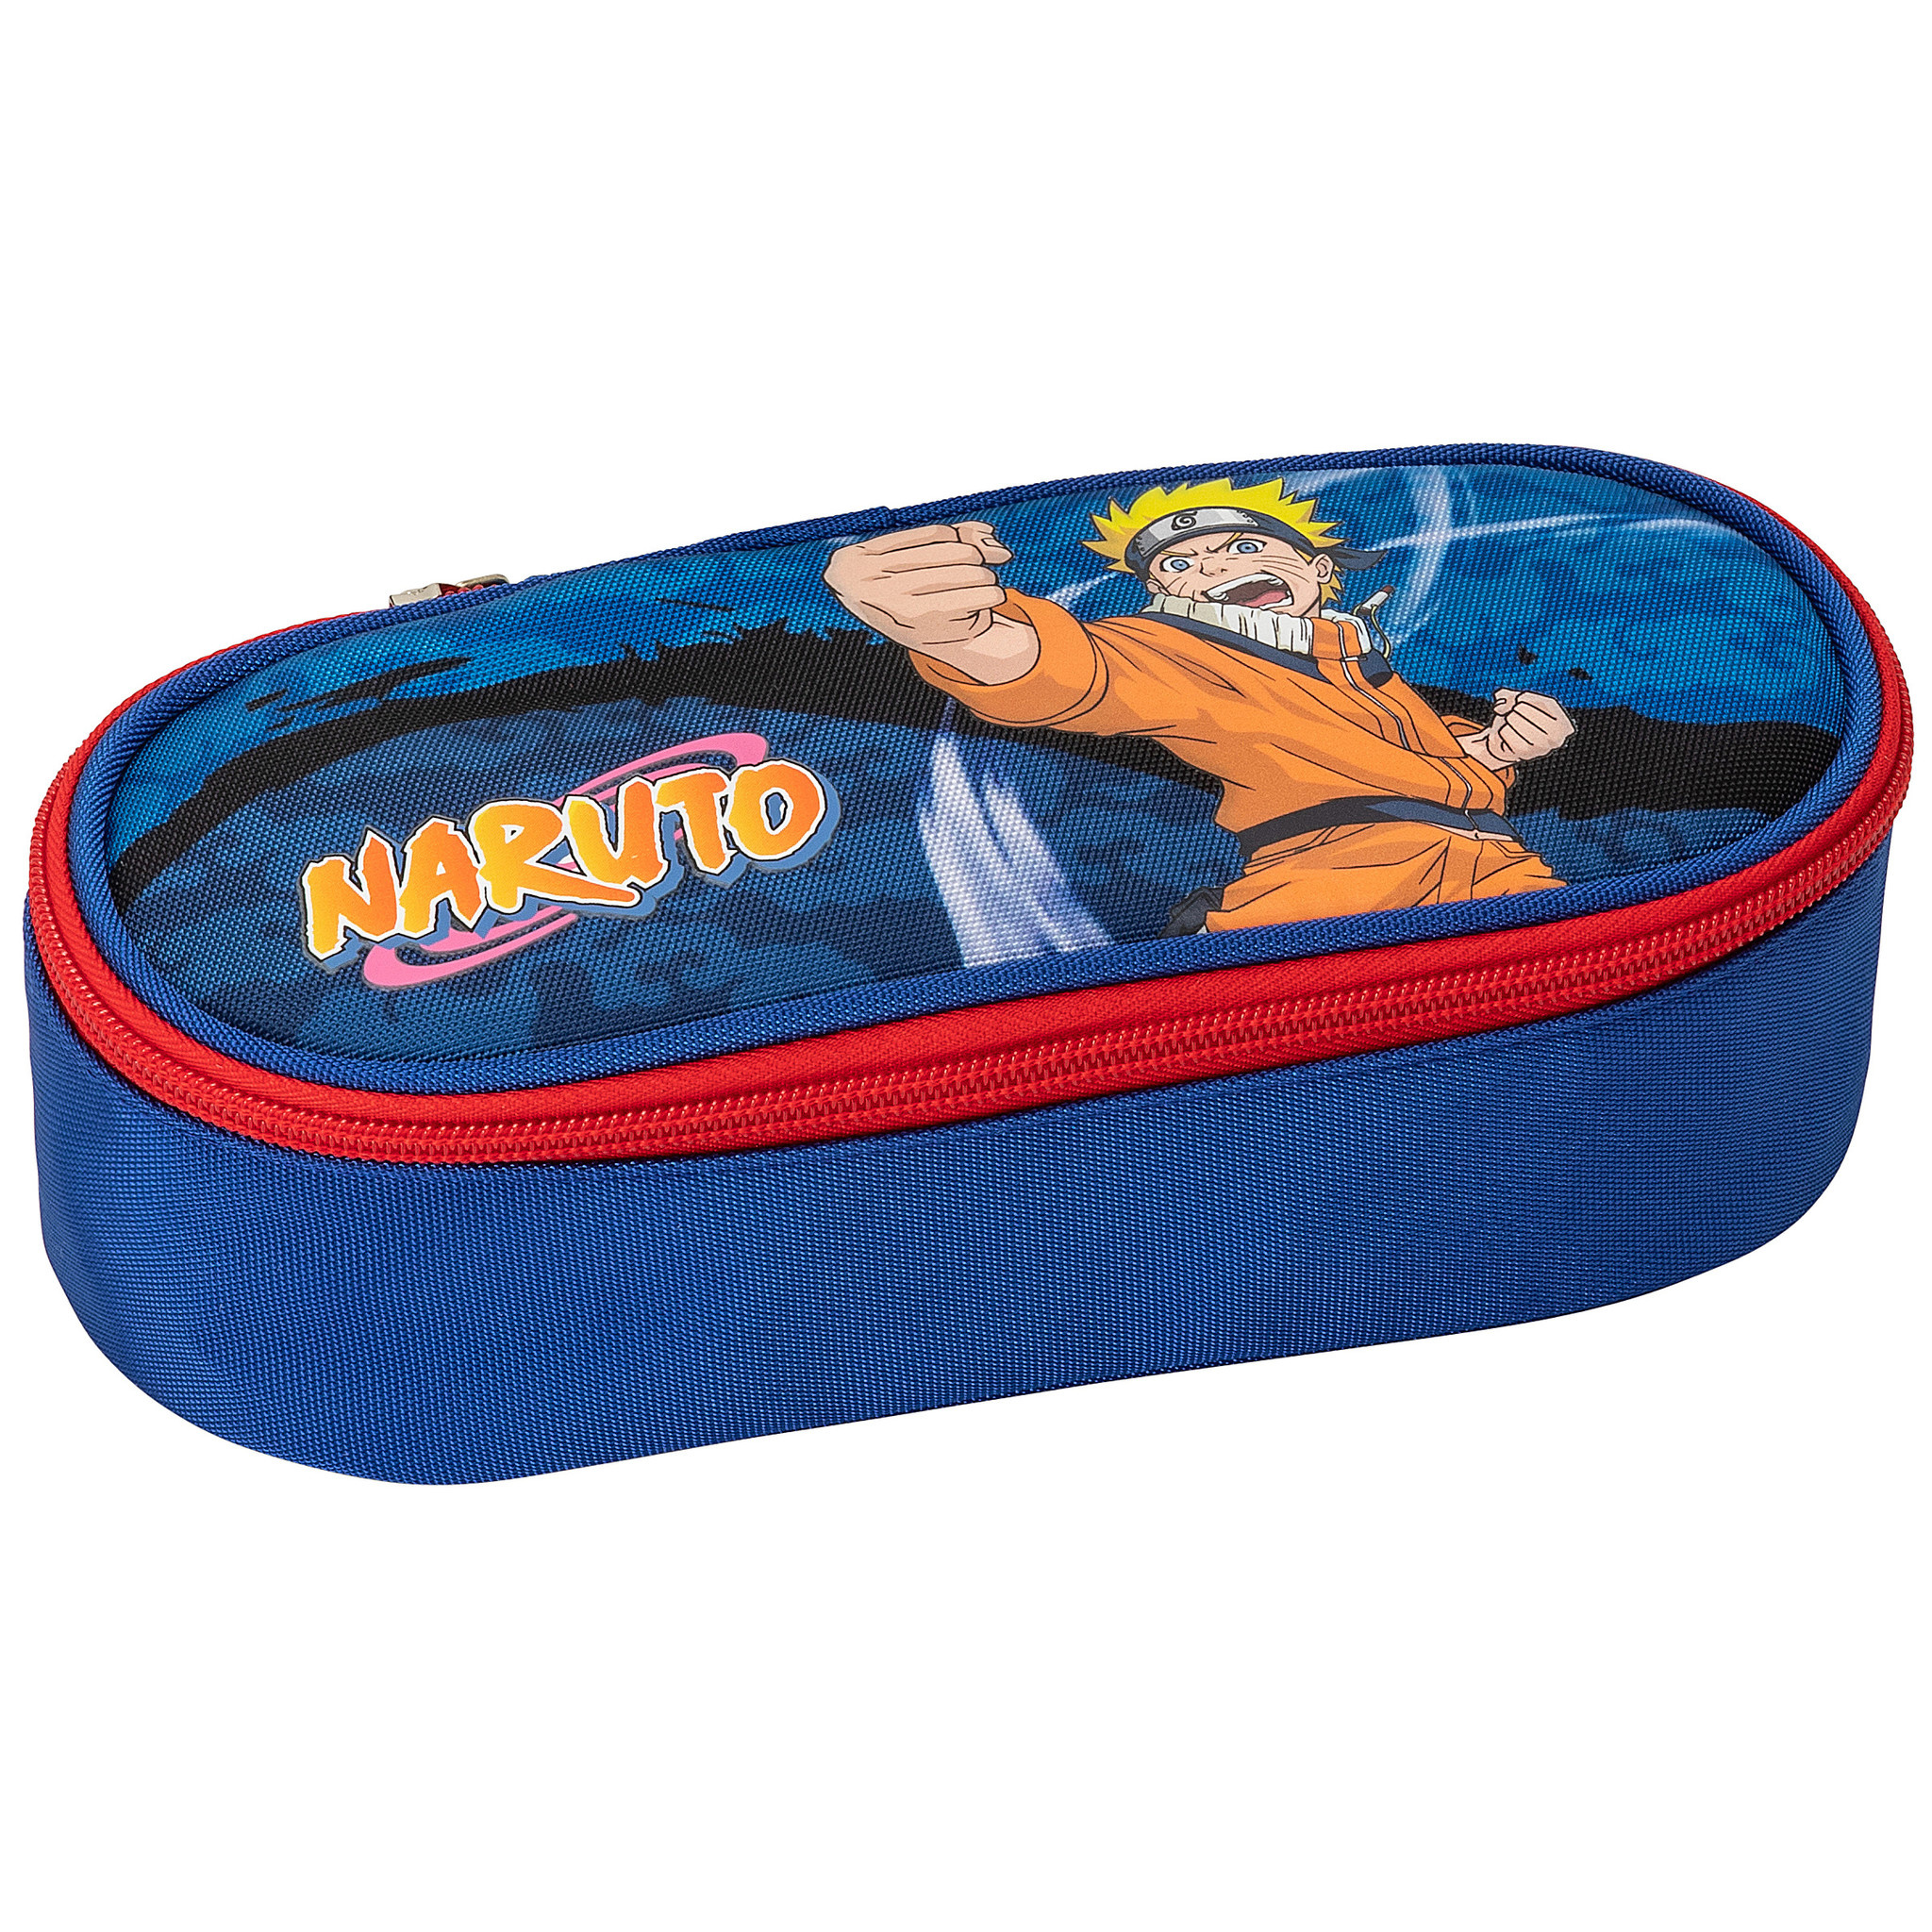 Naruto Pencil case, Power - 22 x 6 x 9.5 cm - Polyester